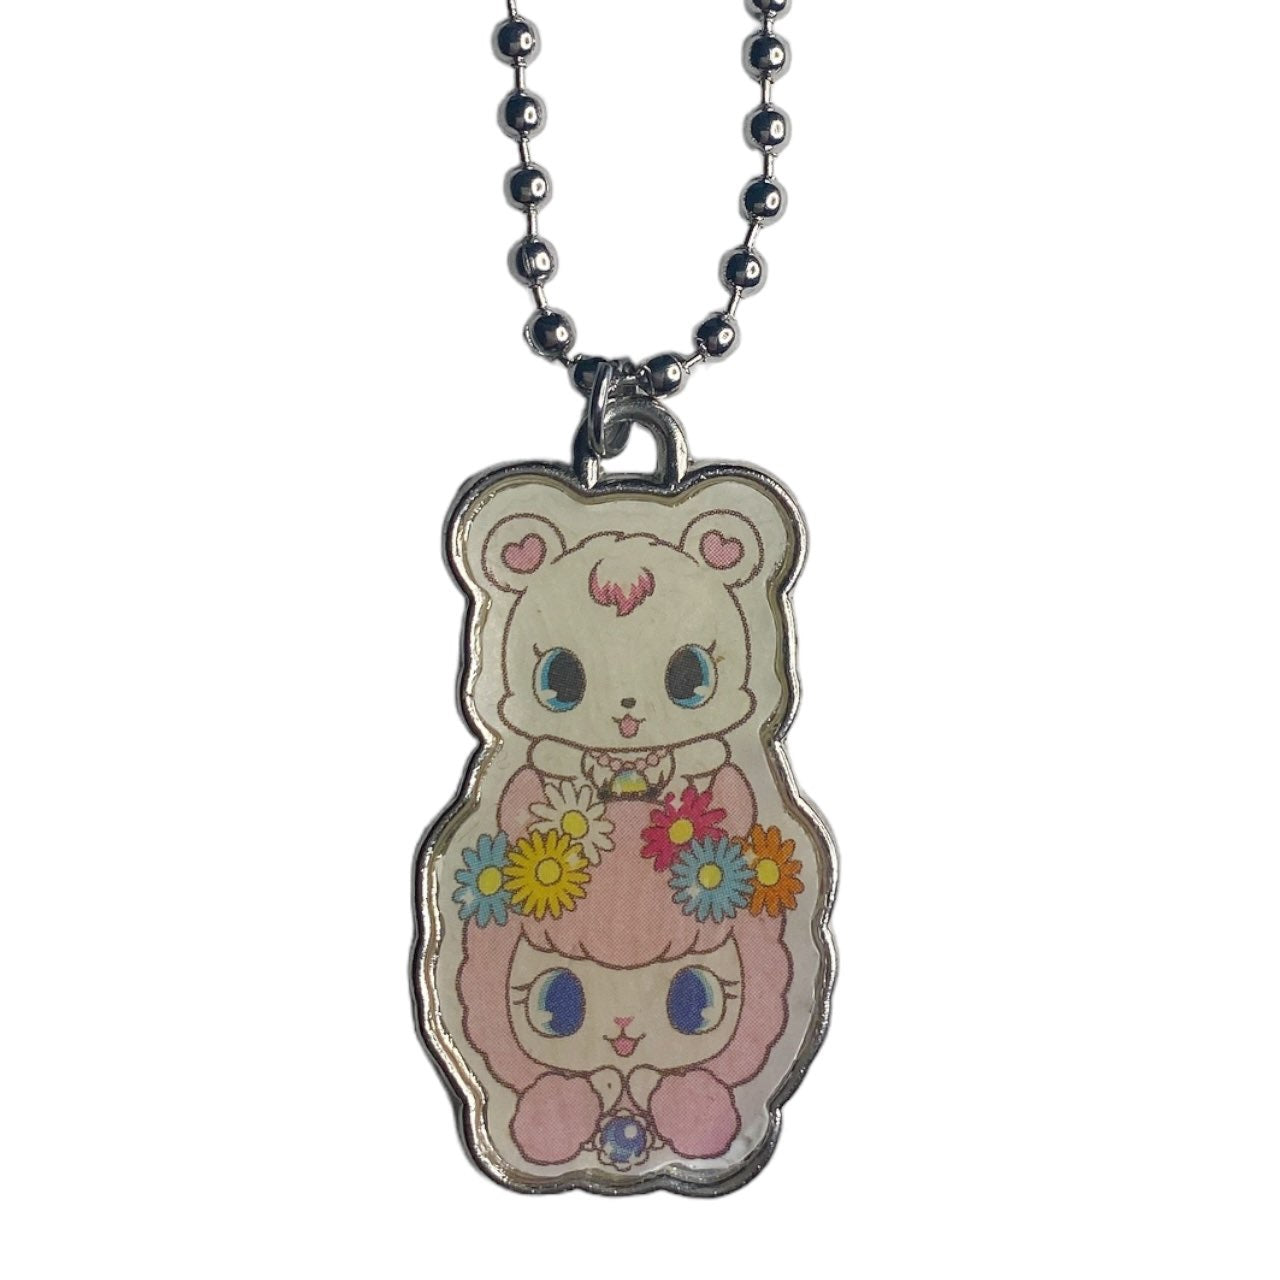 2013 Sanrio Jewelpet Pendant Necklace